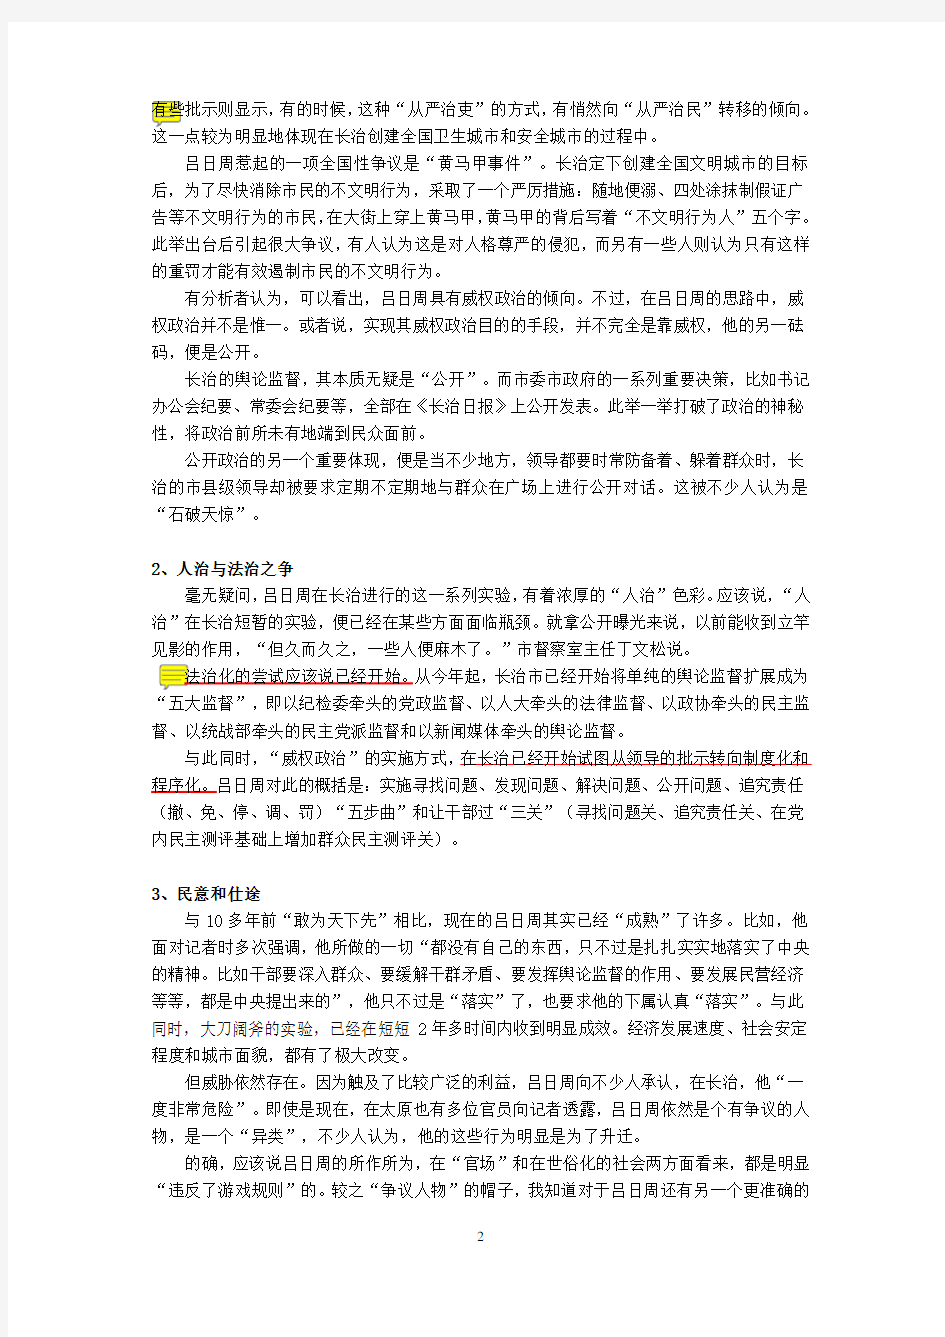 领导科学与艺术案例(一)：中国政坛备受争议的“家长式”领导者——吕日周